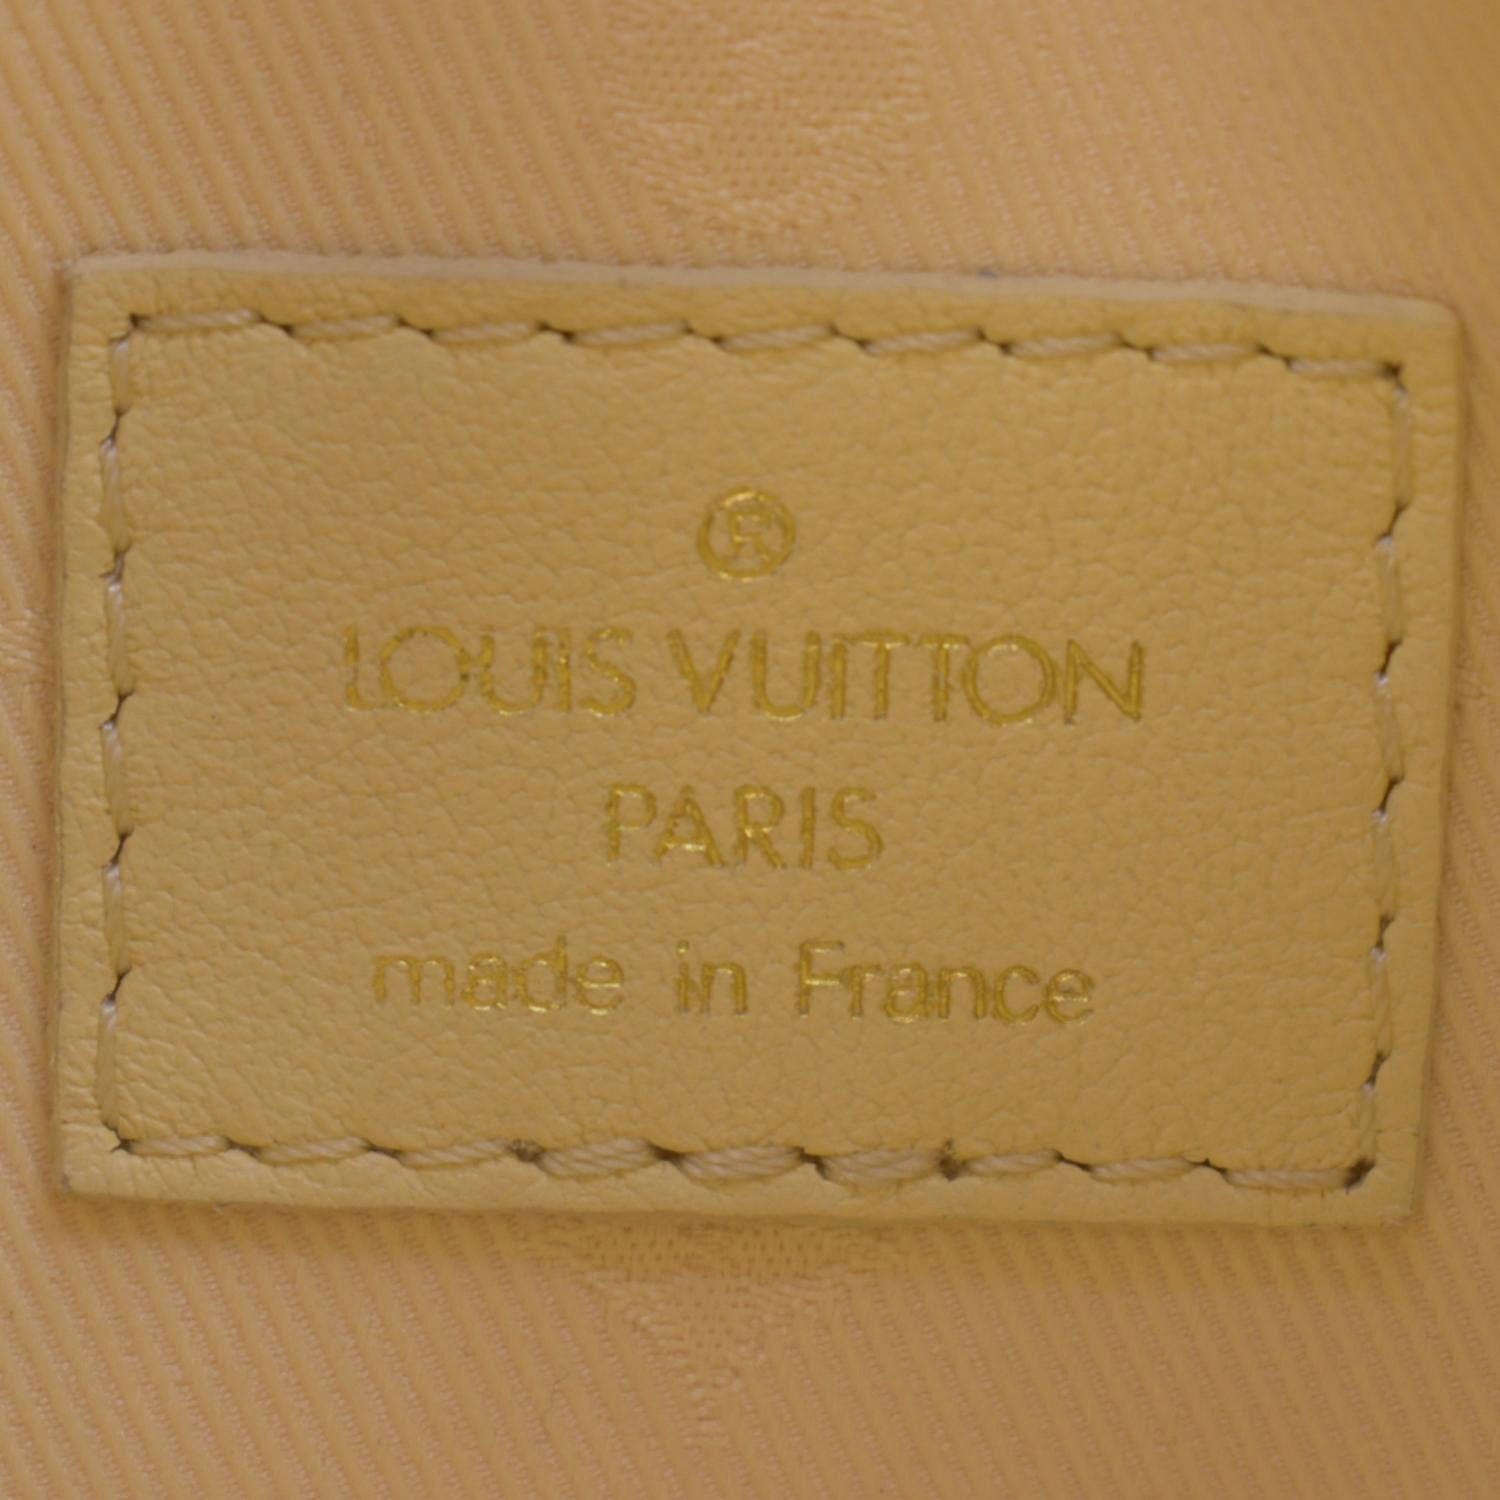 Louis Vuitton Bubblegram Calfskin Over the Moon Crossbody Bag, Louis  Vuitton Handbags